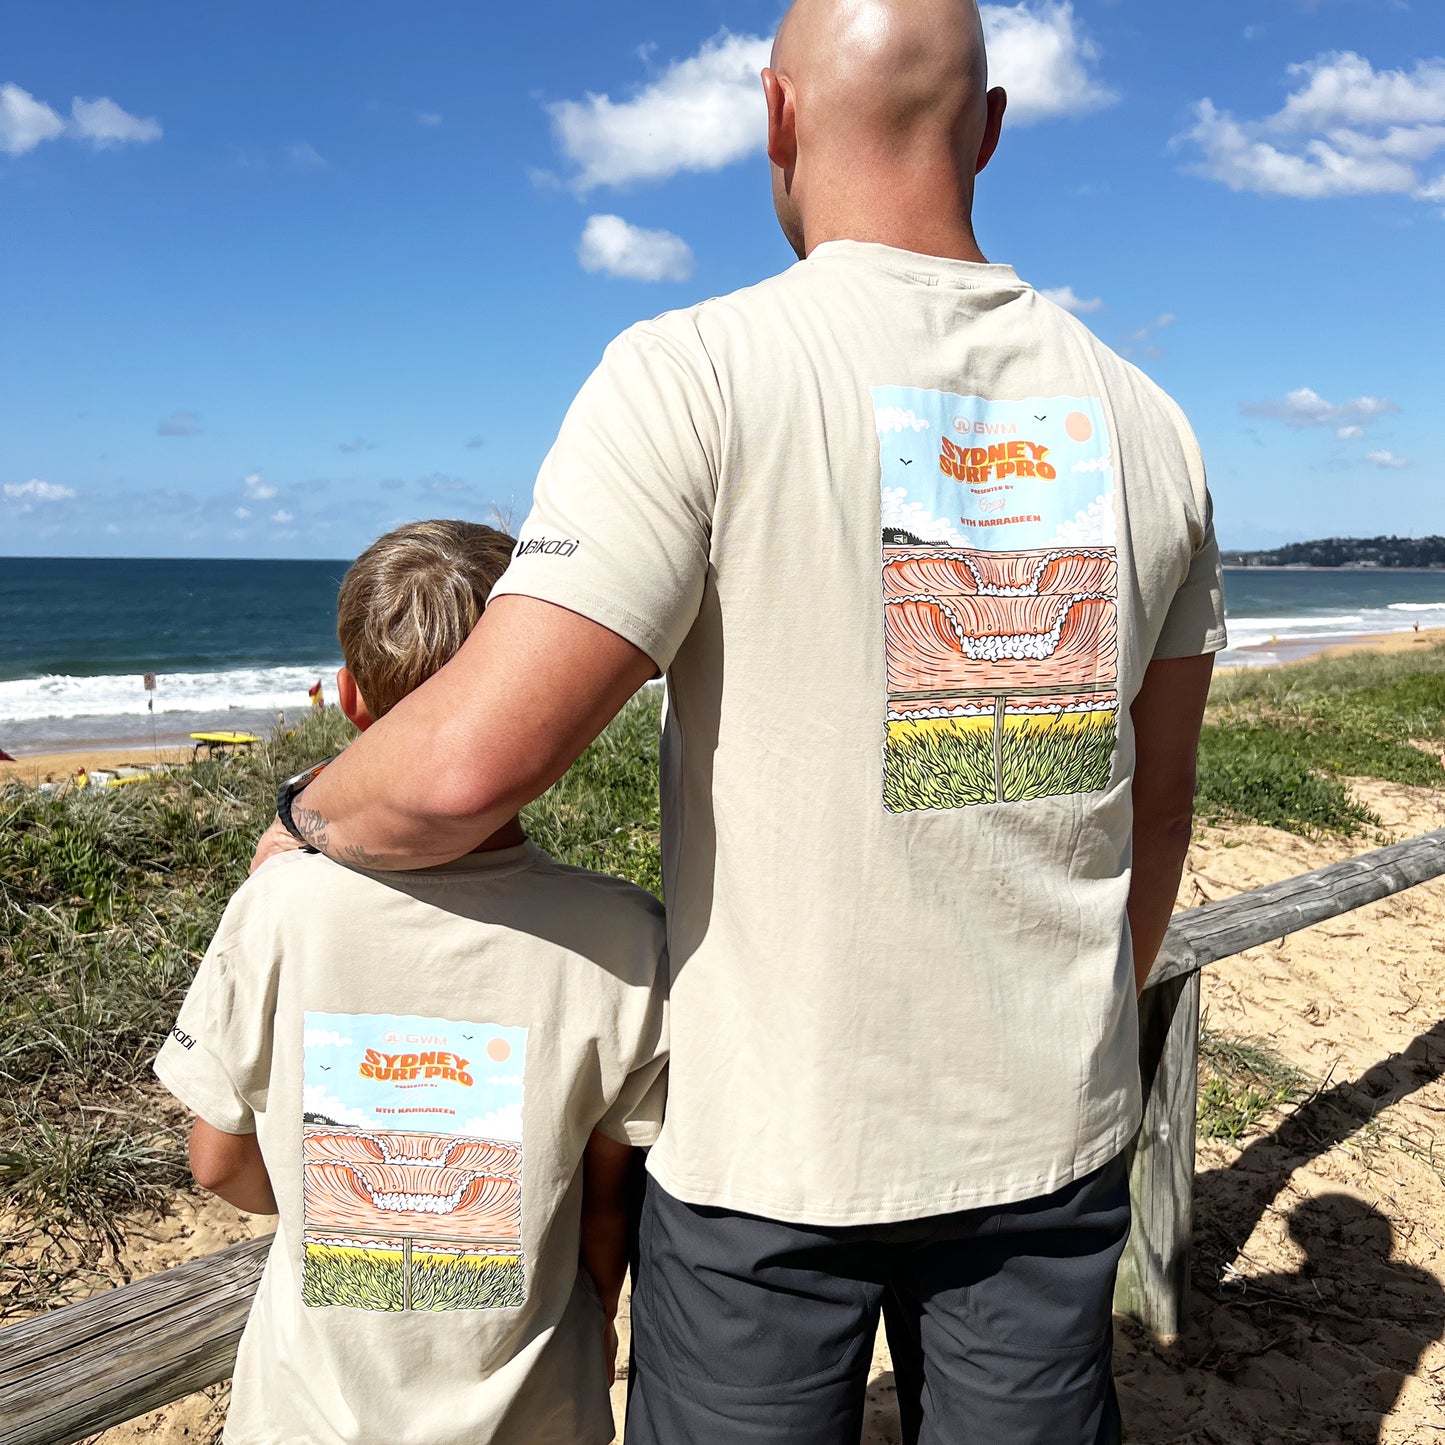 Sydney Surf Pro Adult Tee - Sand